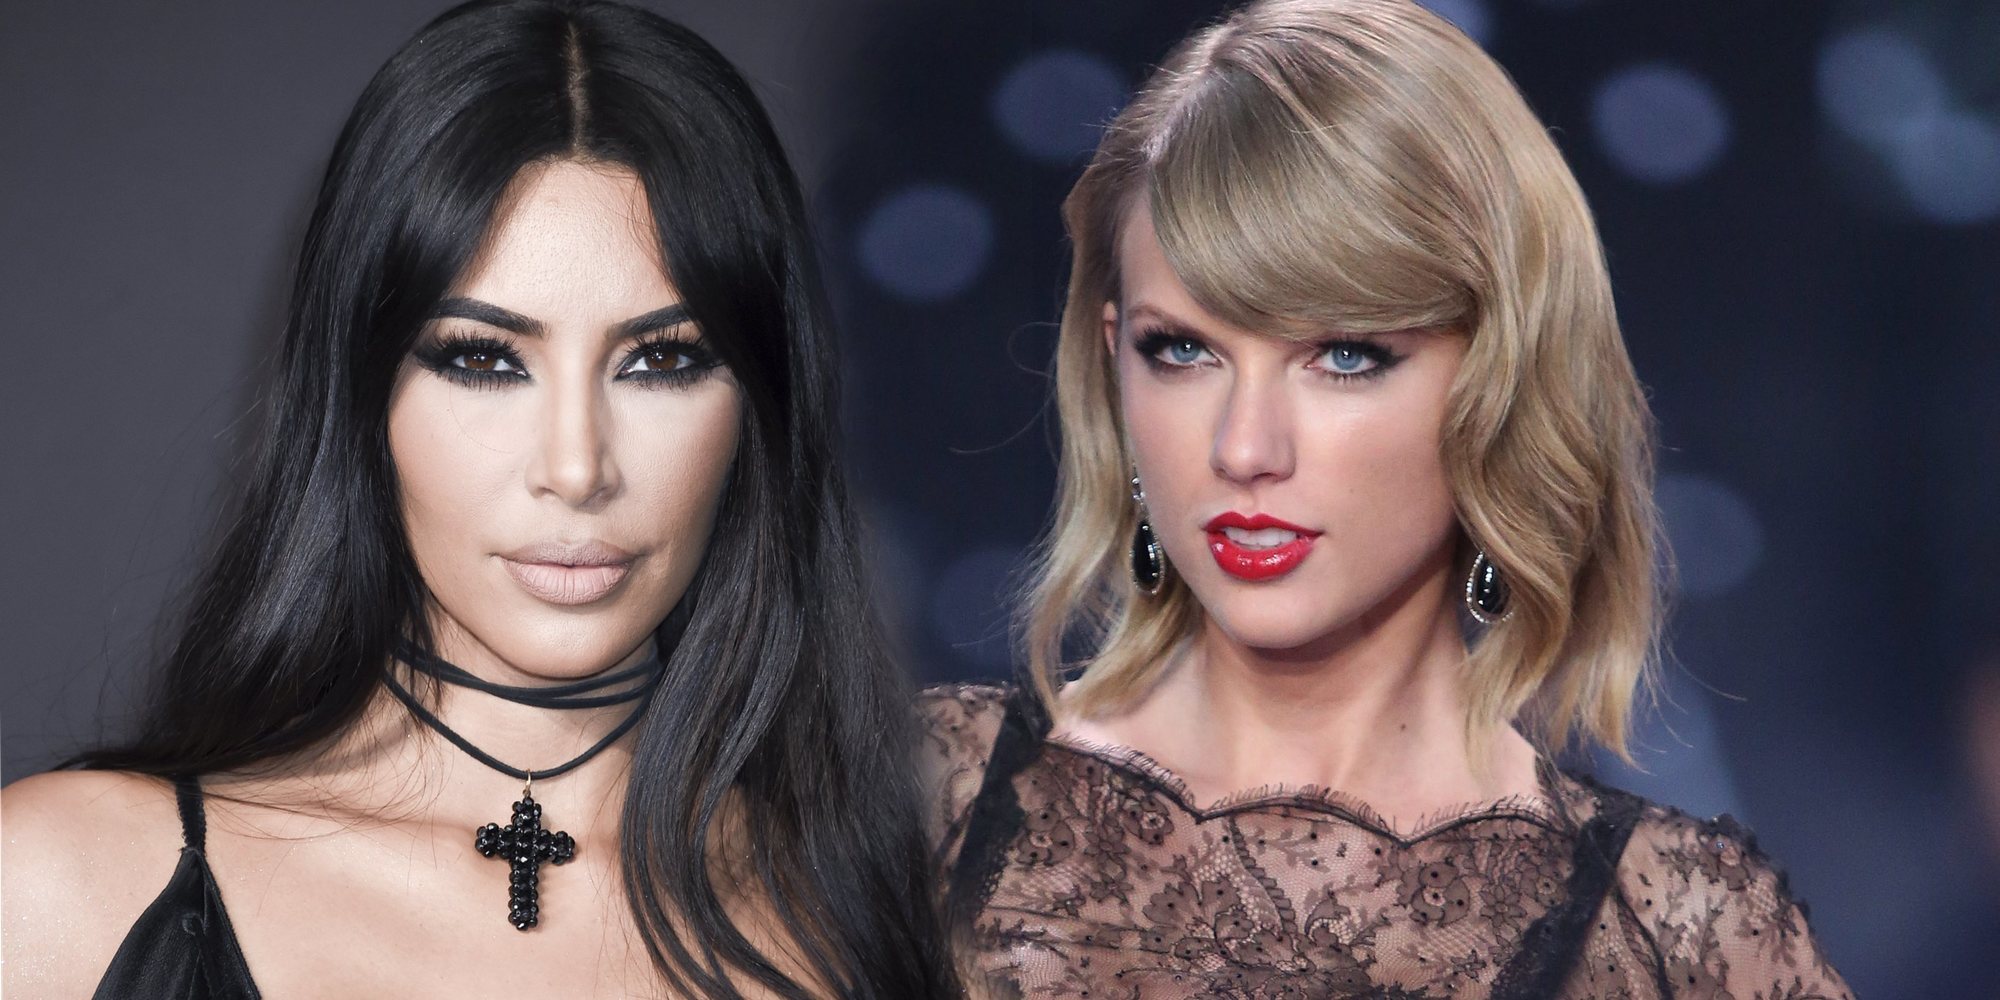 Taylor Swift planta cara a Kim Kardashian en lo que parece una nueva e inminente enemistad